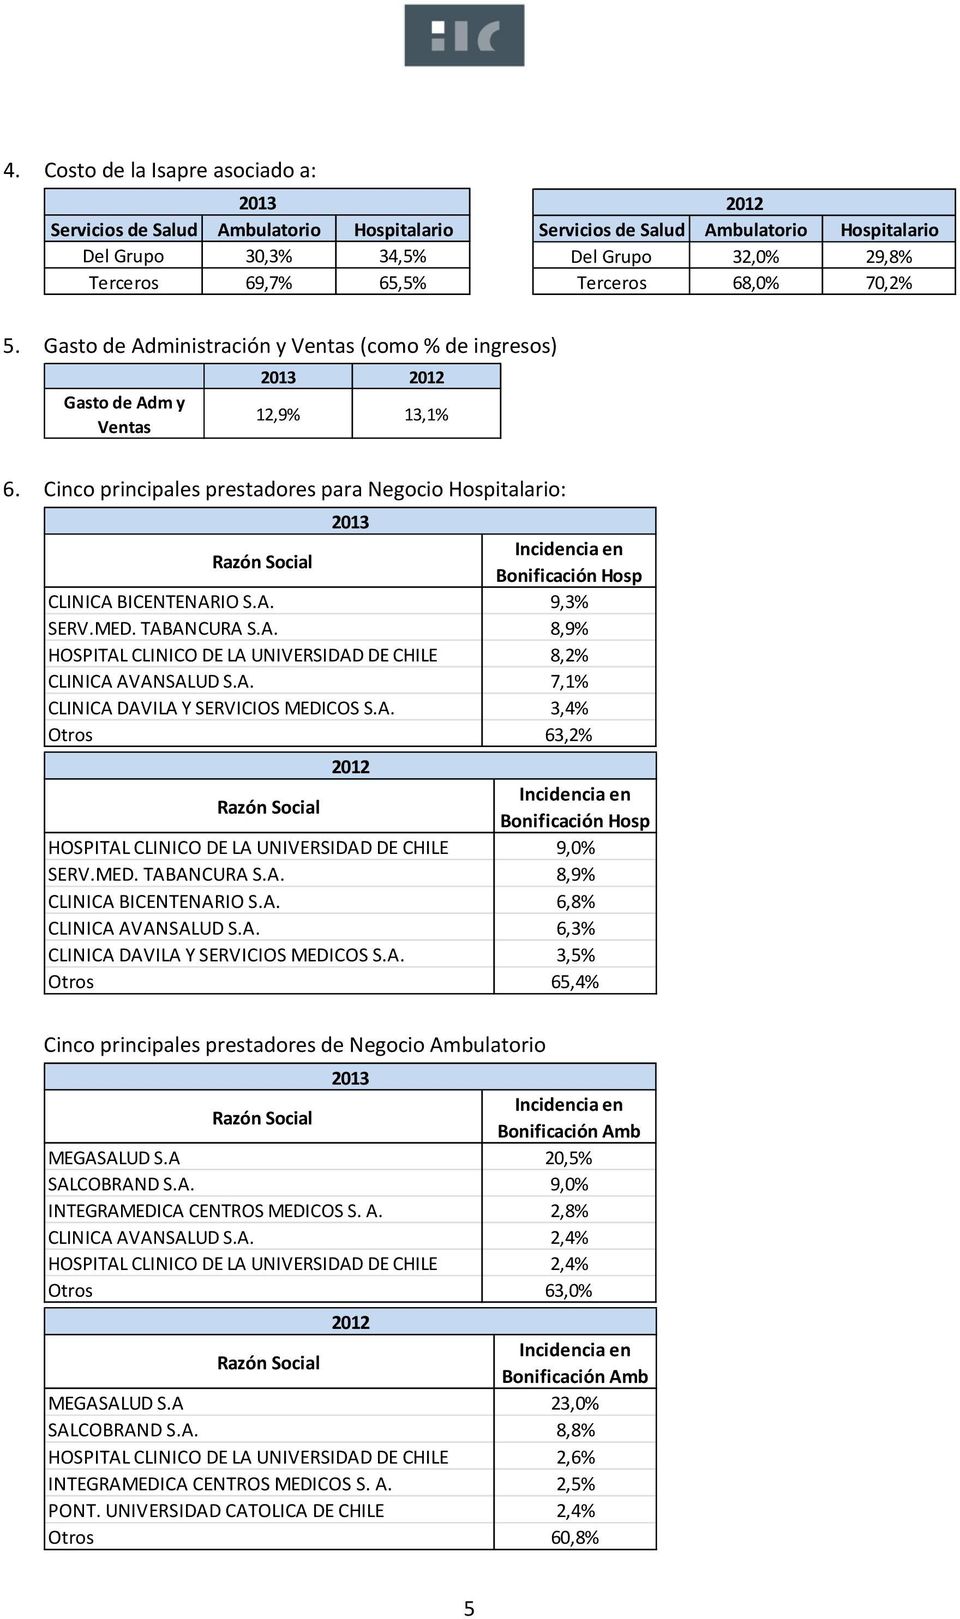 Cinco principales prestadores para Negocio Hospitalario: 2013 Razón Social Incidencia en Bonificación Hosp CLINICA BICENTENARIO S.A. 9,3% SERV.MED. TABANCURA S.A. 8,9% HOSPITAL CLINICO DE LA UNIVERSIDAD DE CHILE 8,2% CLINICA AVANSALUD S.